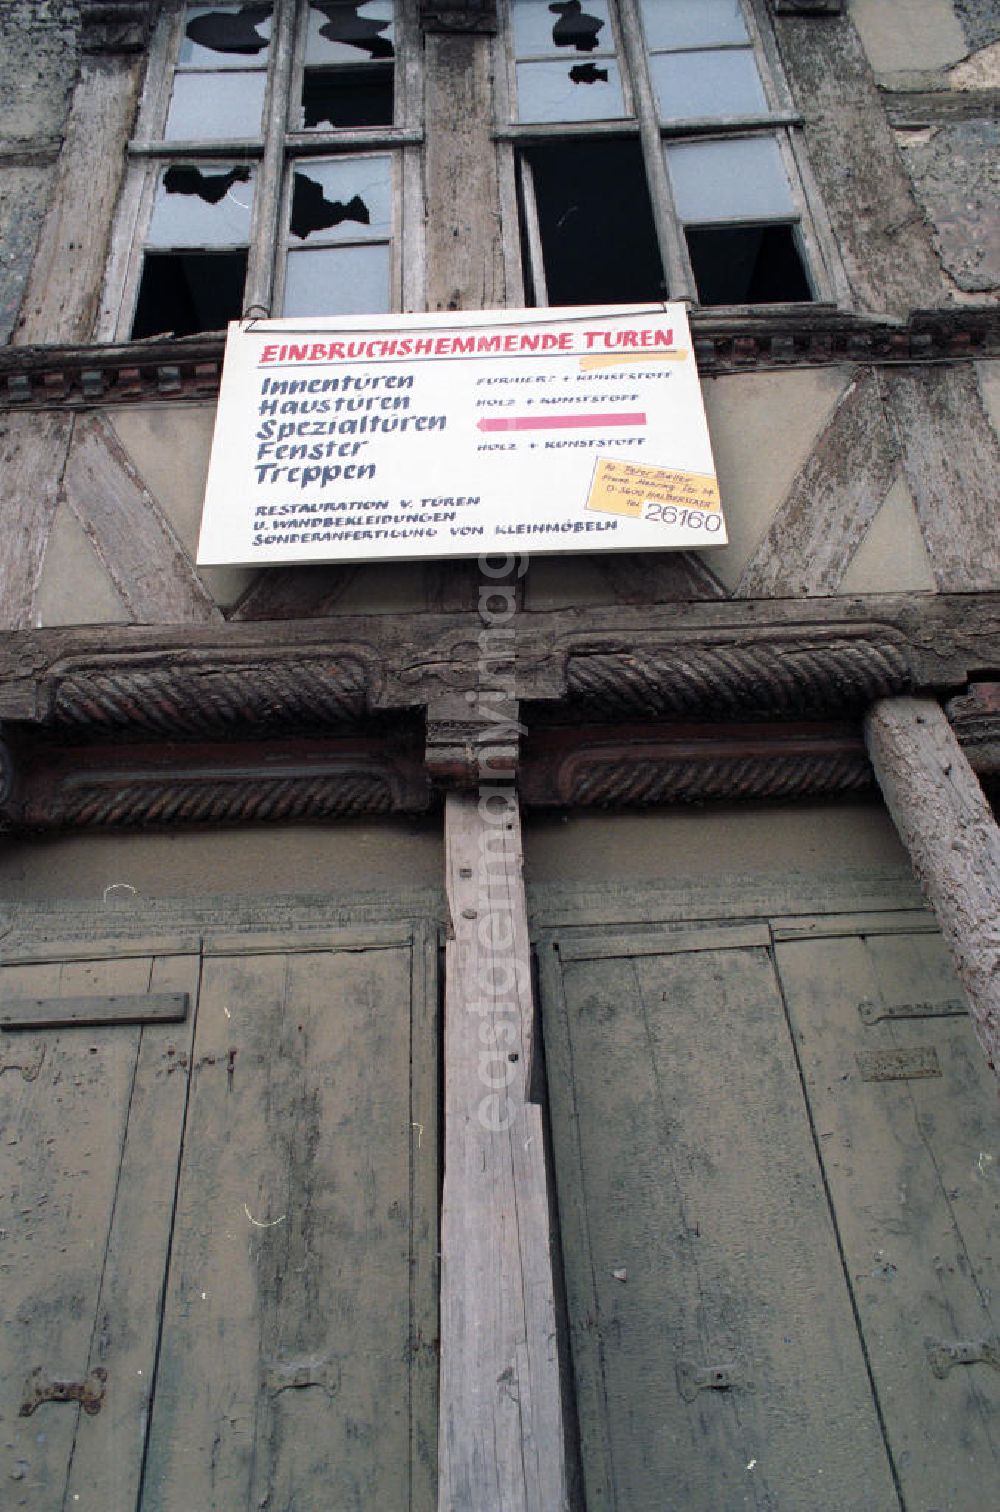 Halberstadt: Werbeschild über einer Haustür eines stark sanierungsbedürftigen Fachwerkhaus, mit der Aufschrift Einbruchshemmende Türen ..., darüber Fenster mit zerbrochenen / kaputten Fensterscheiben.